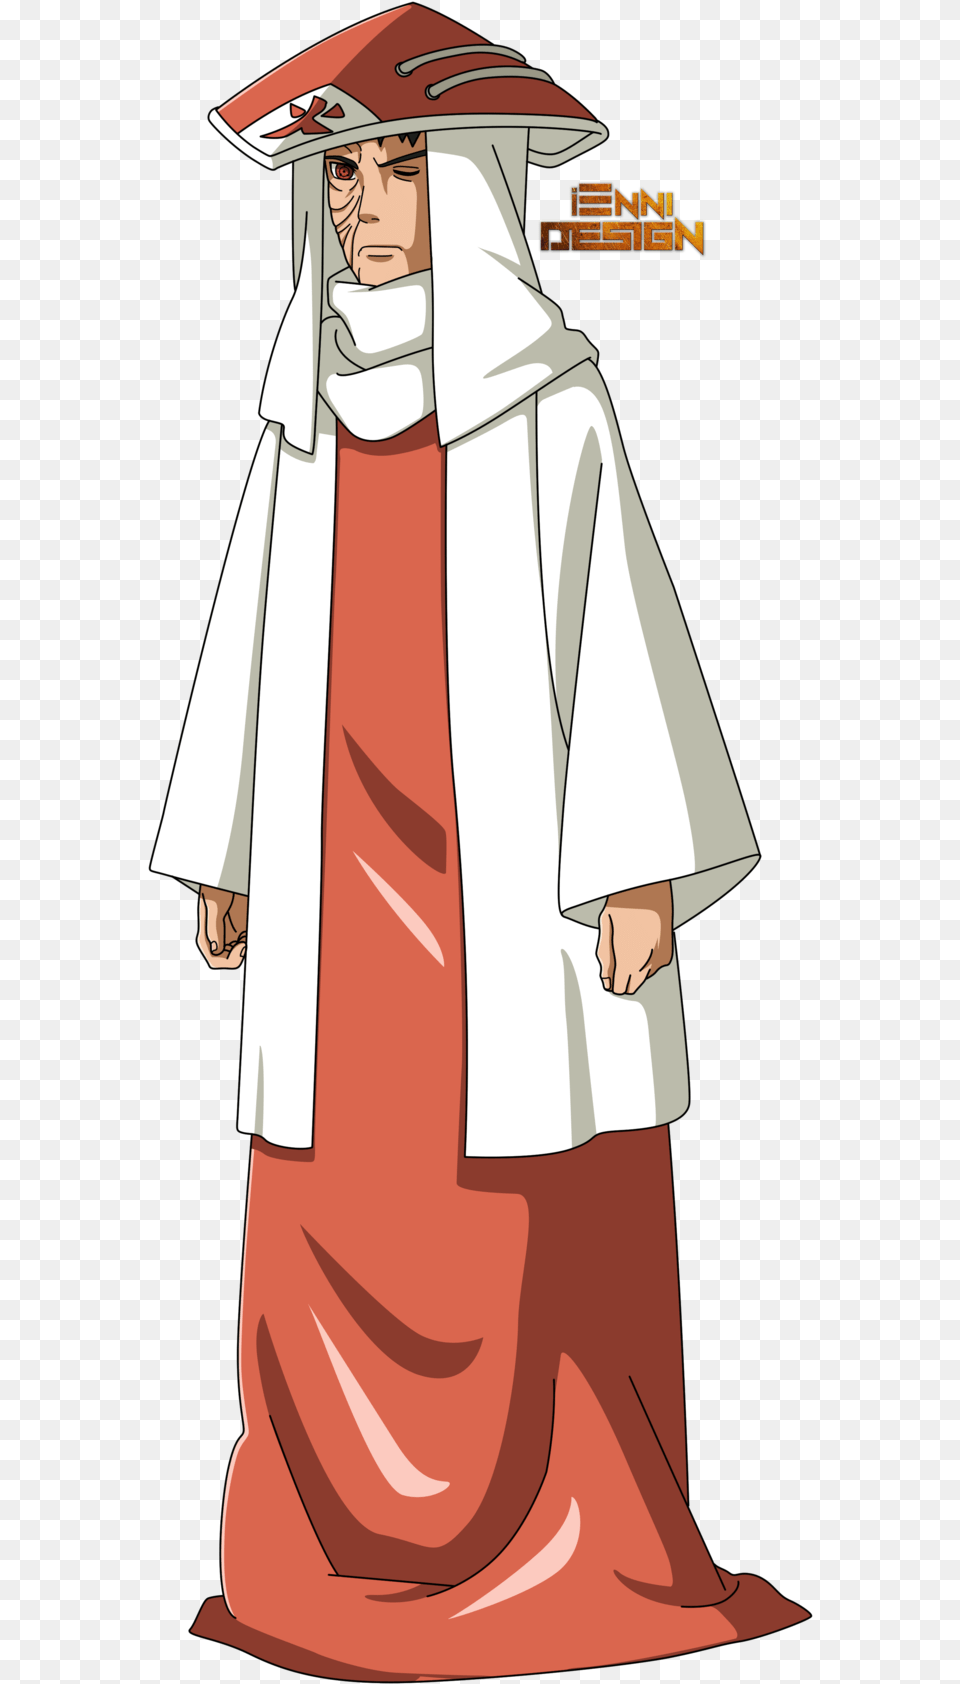 Naruto Shippuden Uchiha Hokage Obito Uchiha Iennidesign, Person, People, Fashion, Adult Free Png